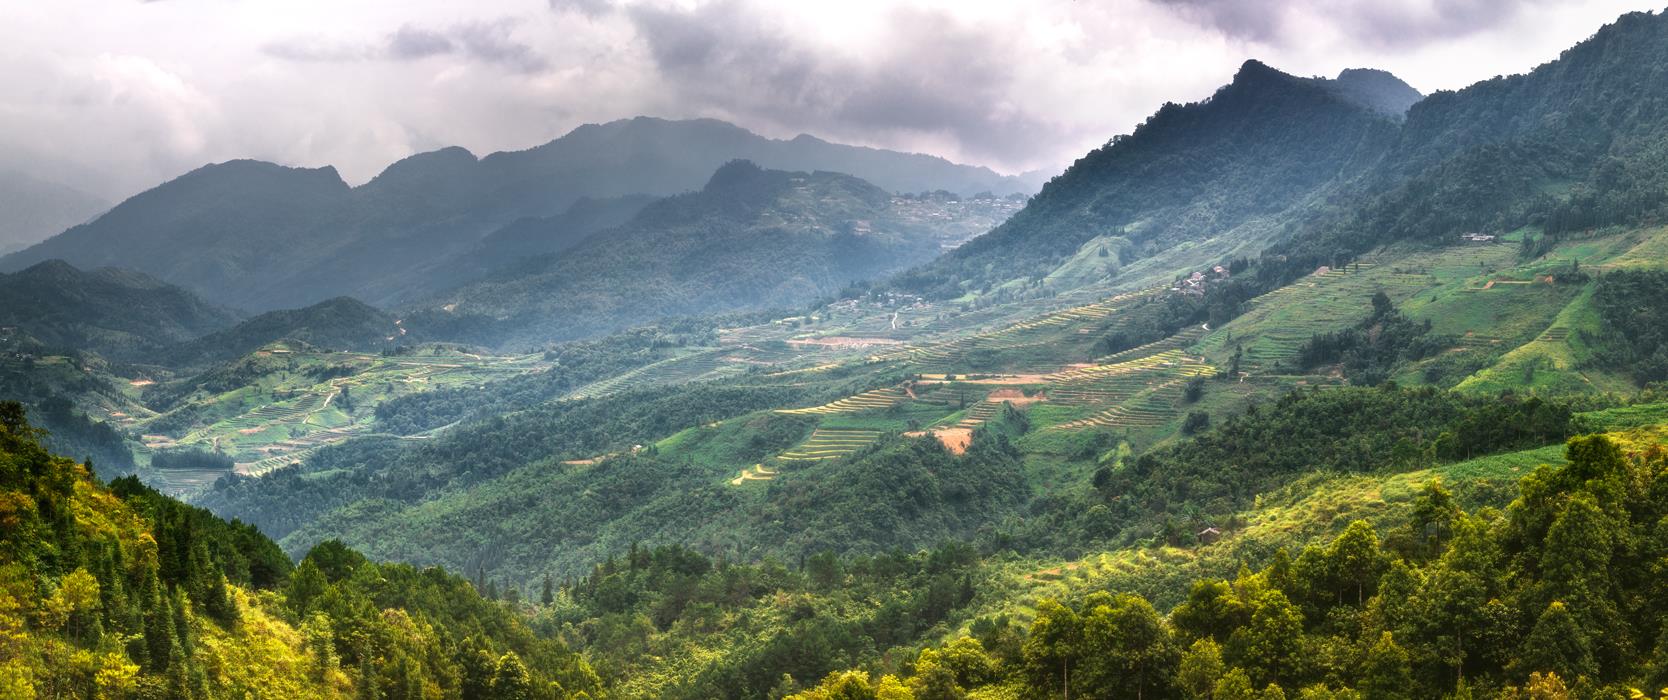 Пейзаж Северного Вьетнама - интерьерная фотокартина